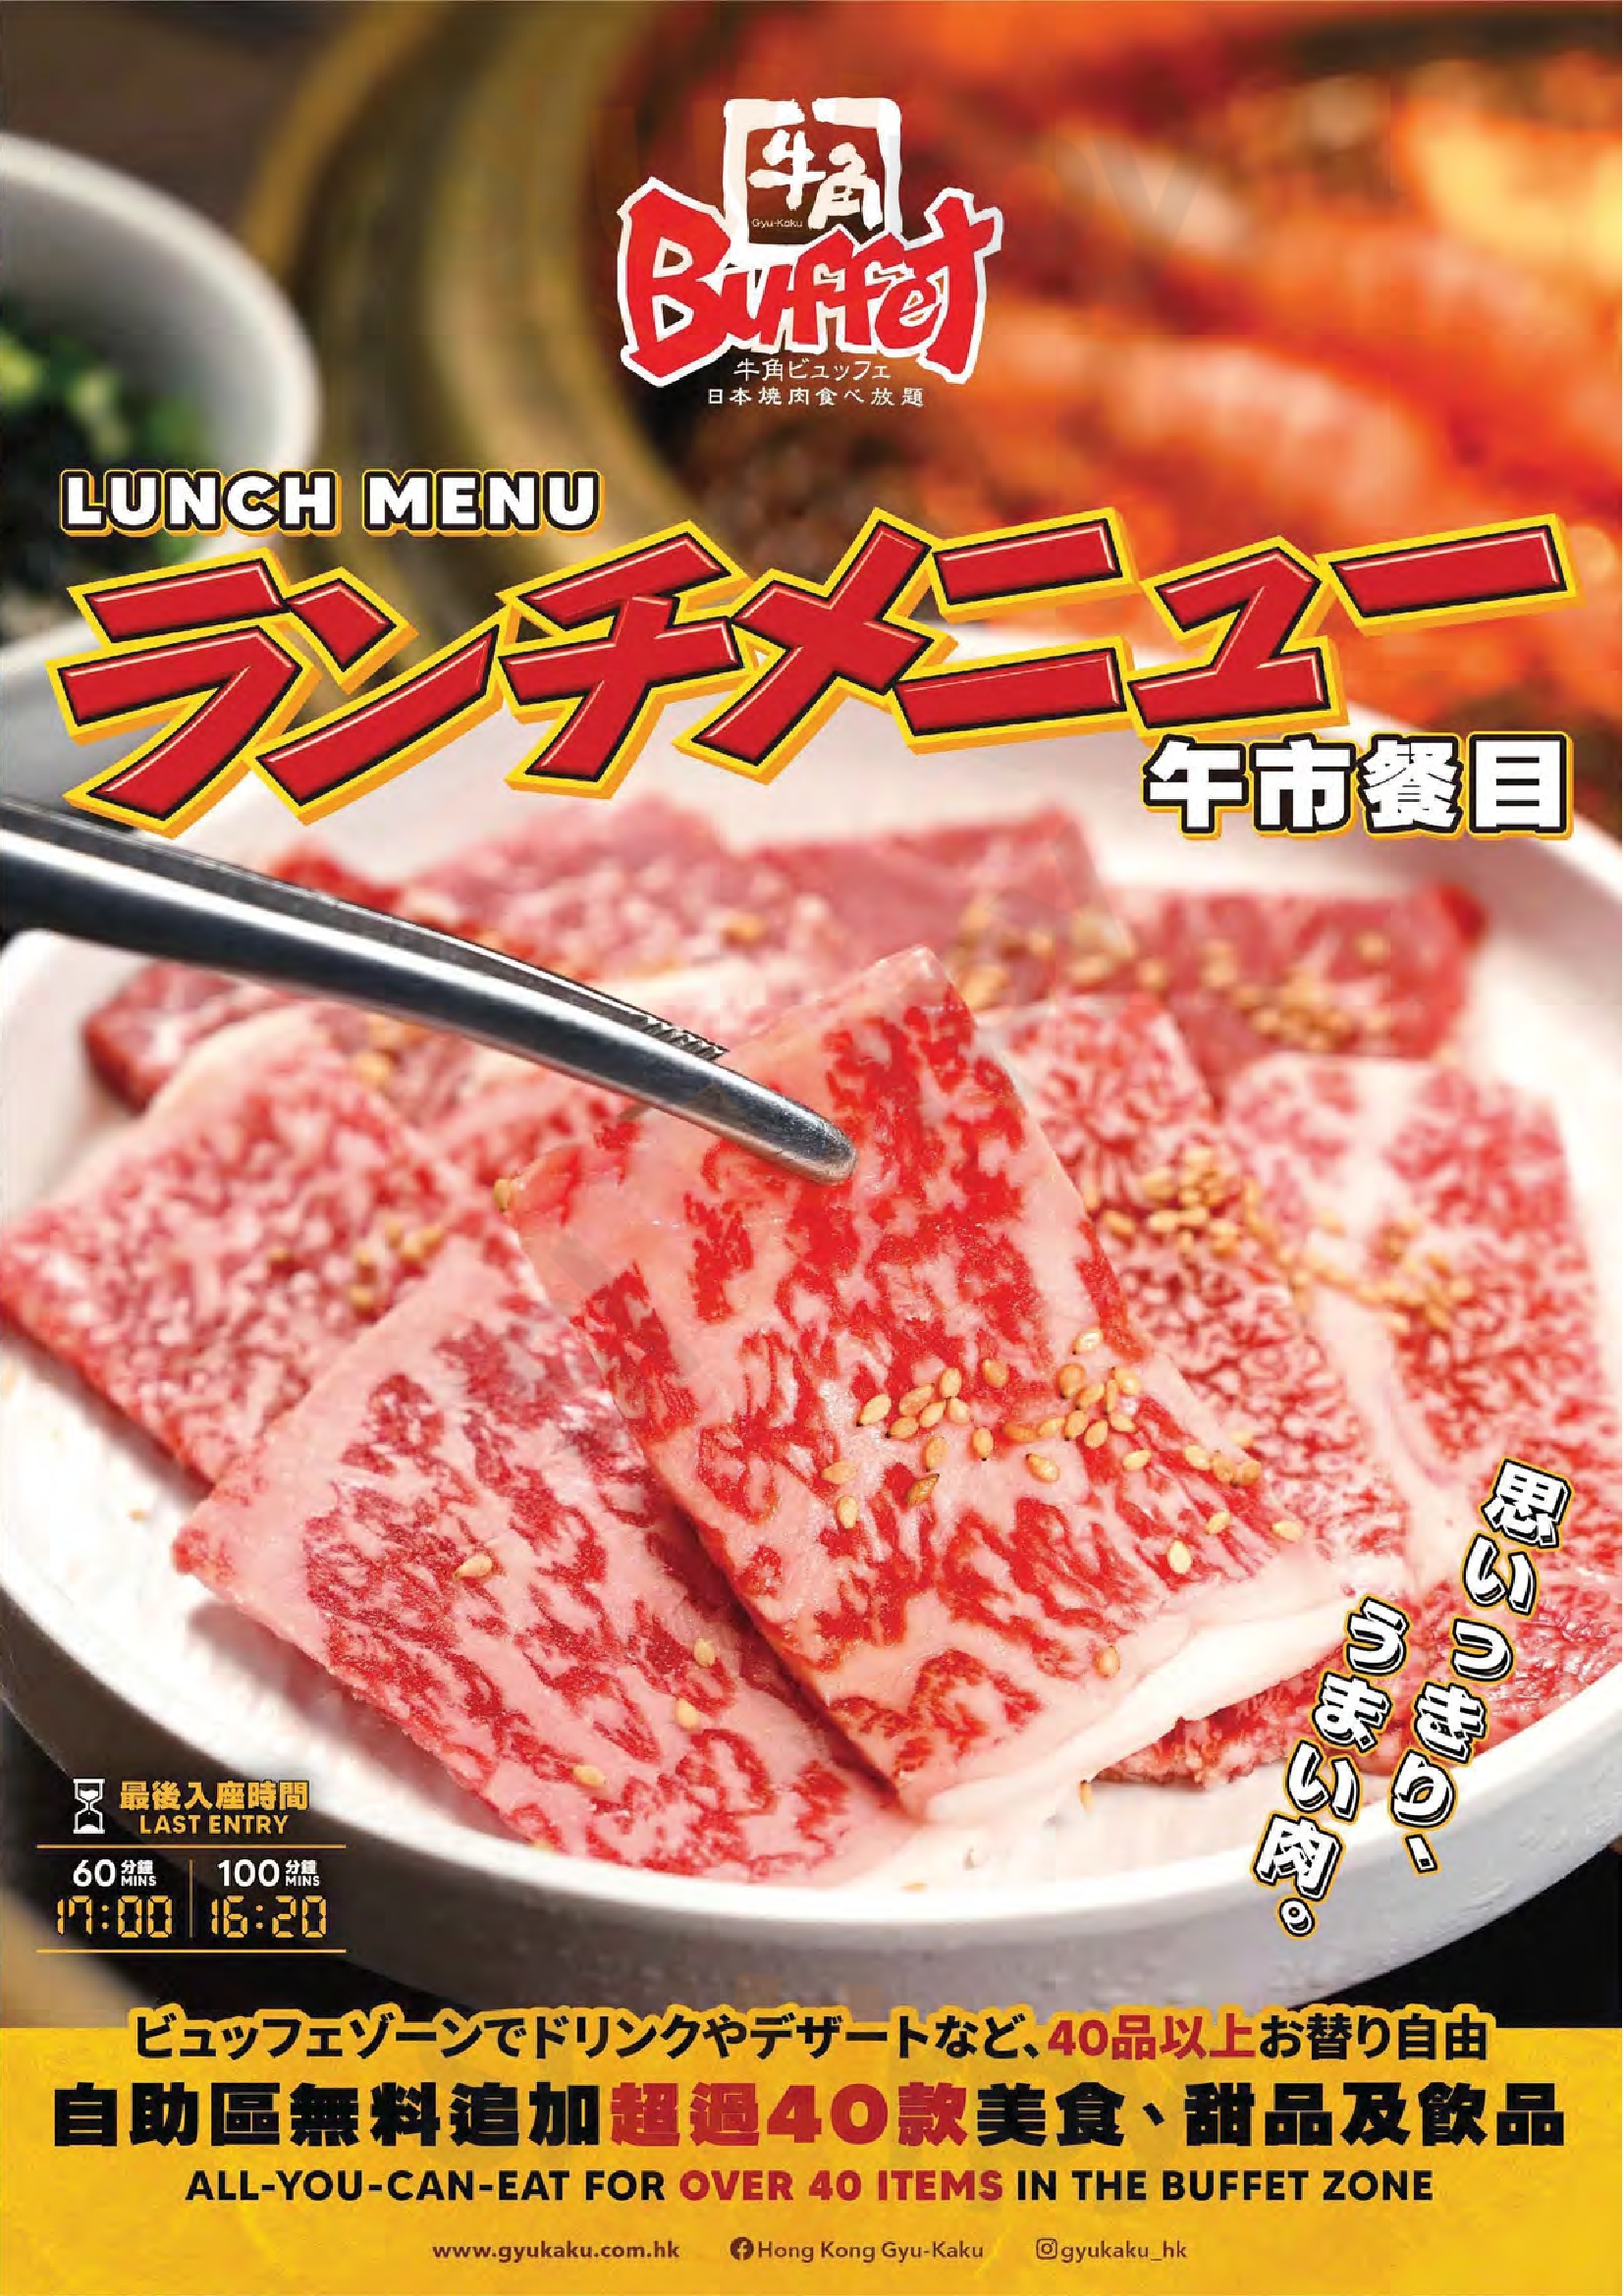 牛角日本燒肉專門店 香港 Menu - 1